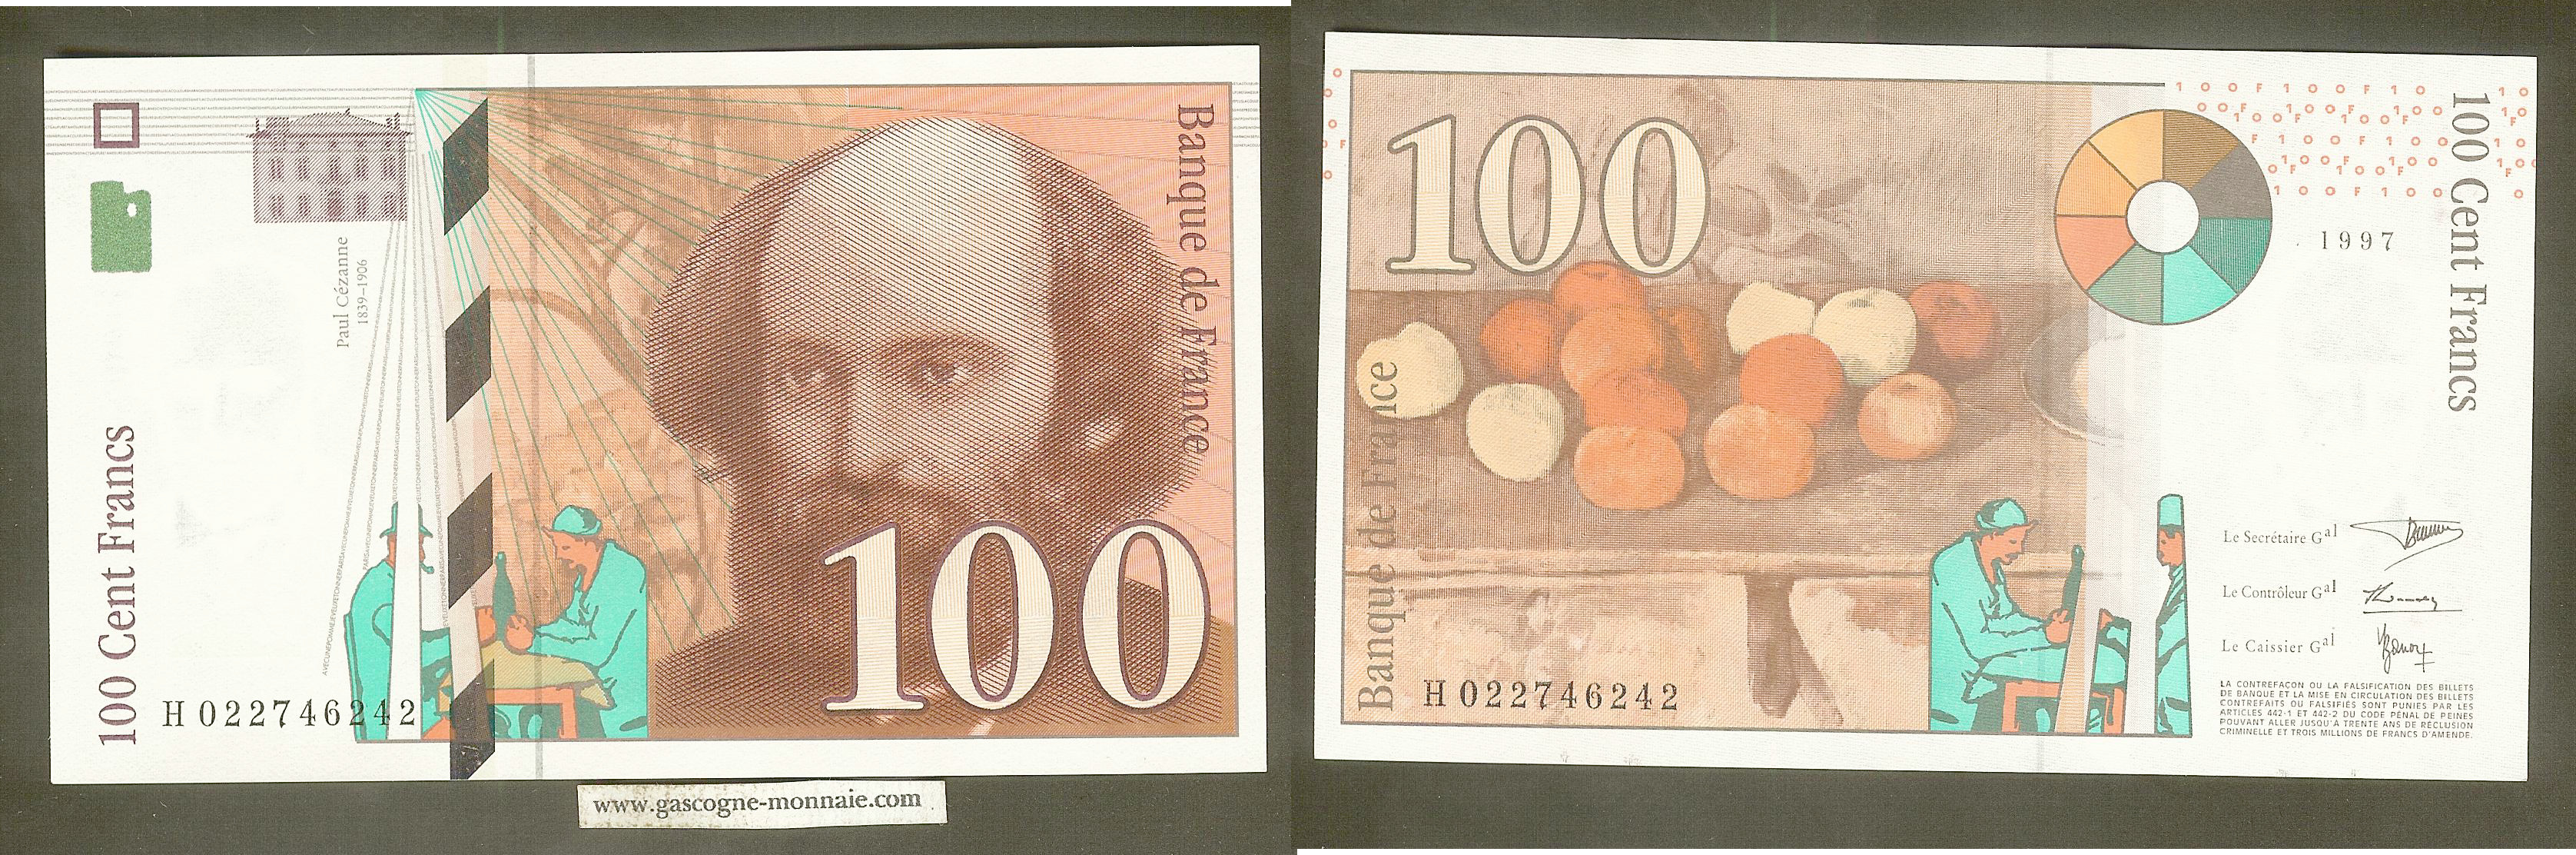 100 Francs Paul Cézanne 1997  H022746242 SPL+